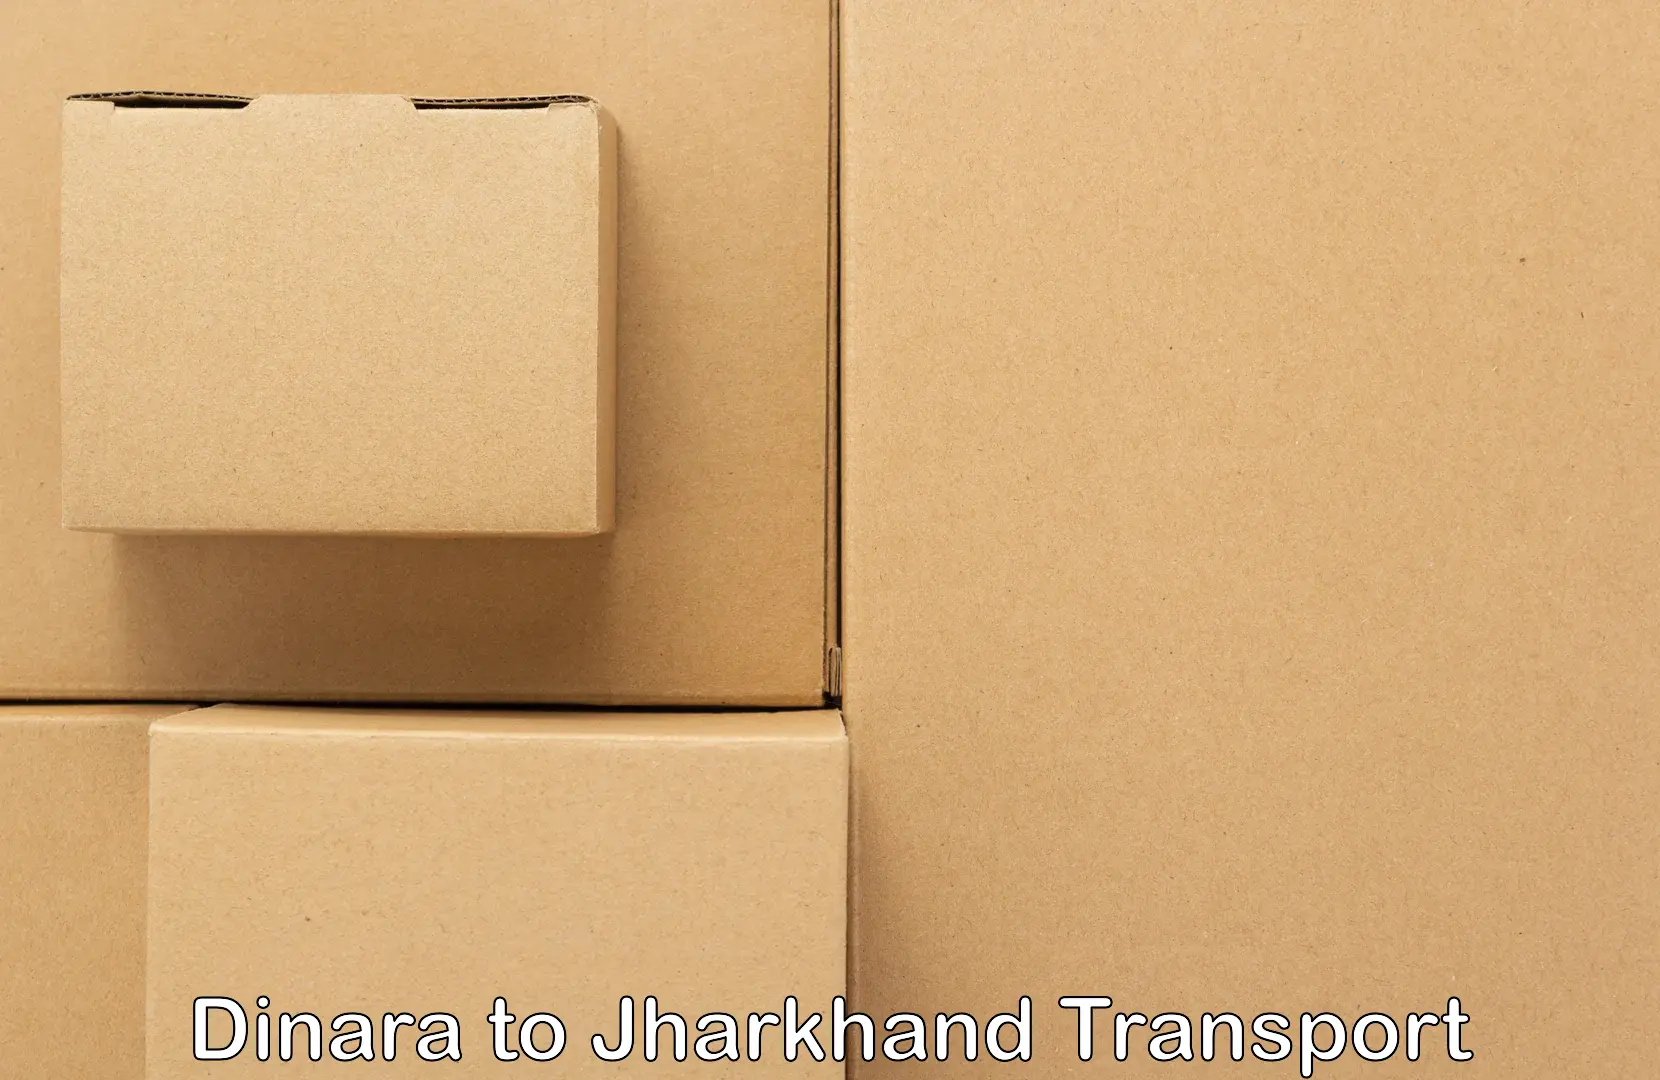 Truck transport companies in India in Dinara to Giridih